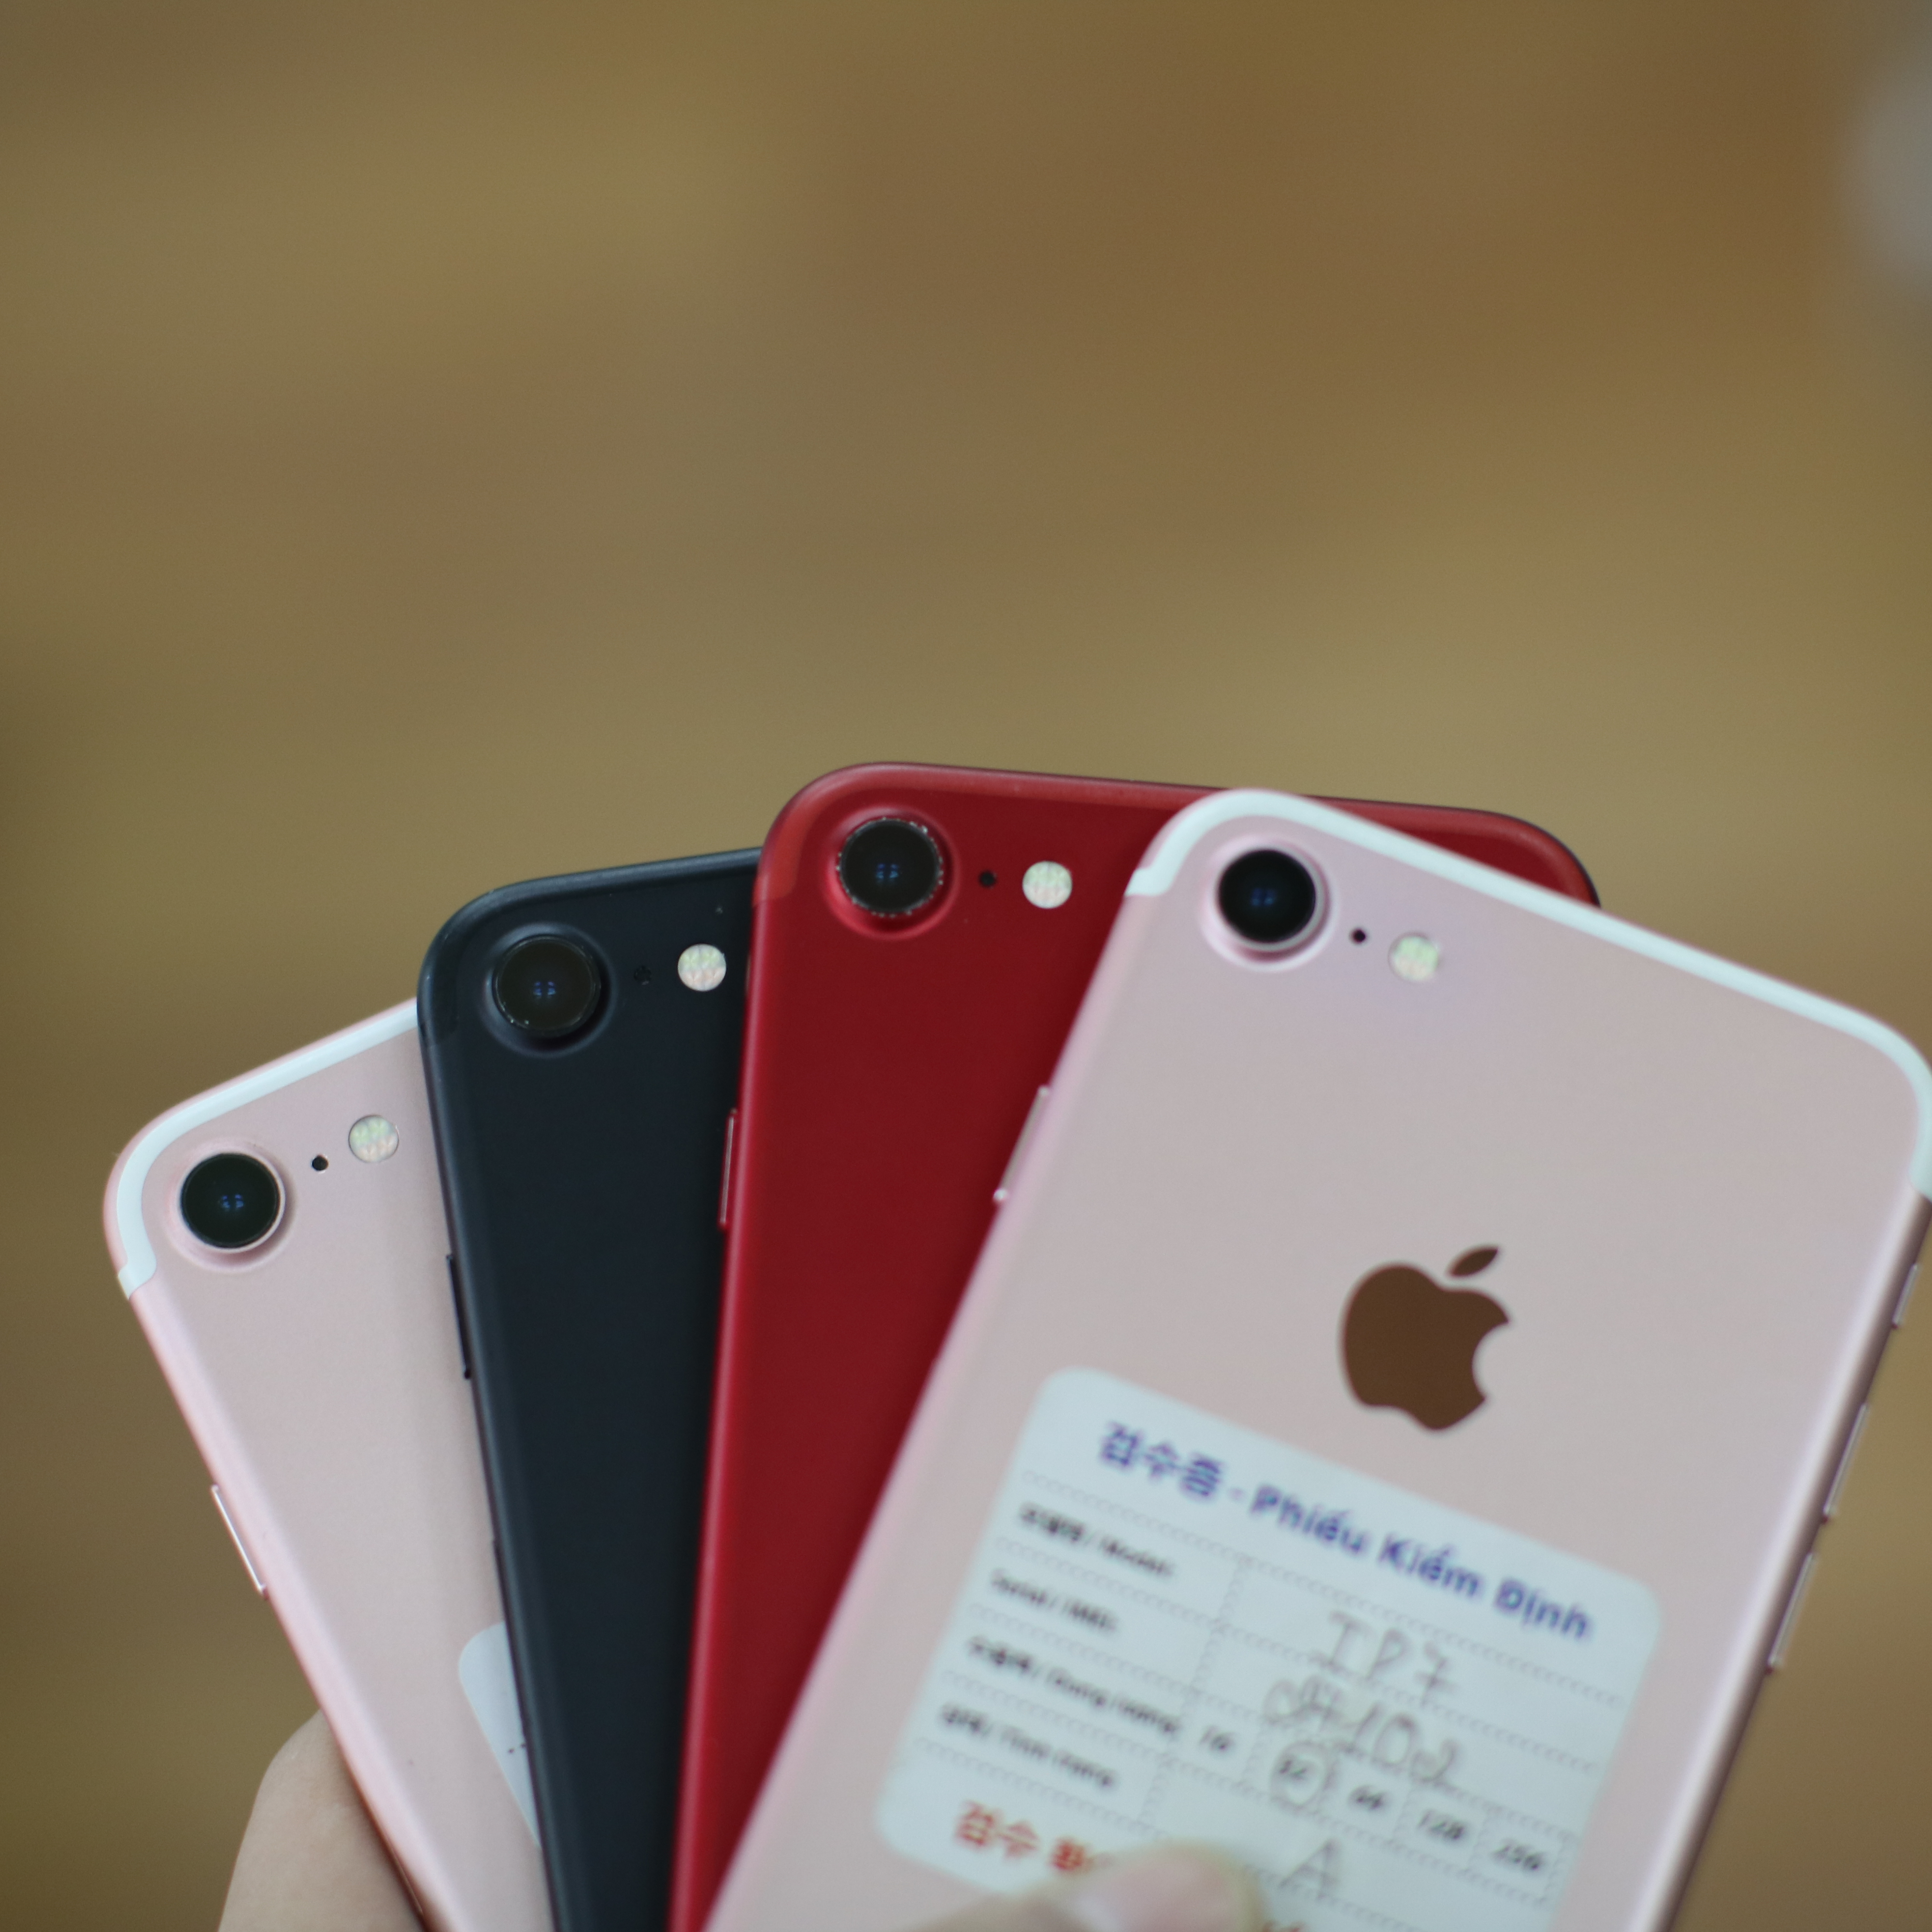 iPhone 6, iPhone 6S, iPhone 7 tại Hải Phòng hàng hiếm nhưng vẫn tha hồ lựa chọn